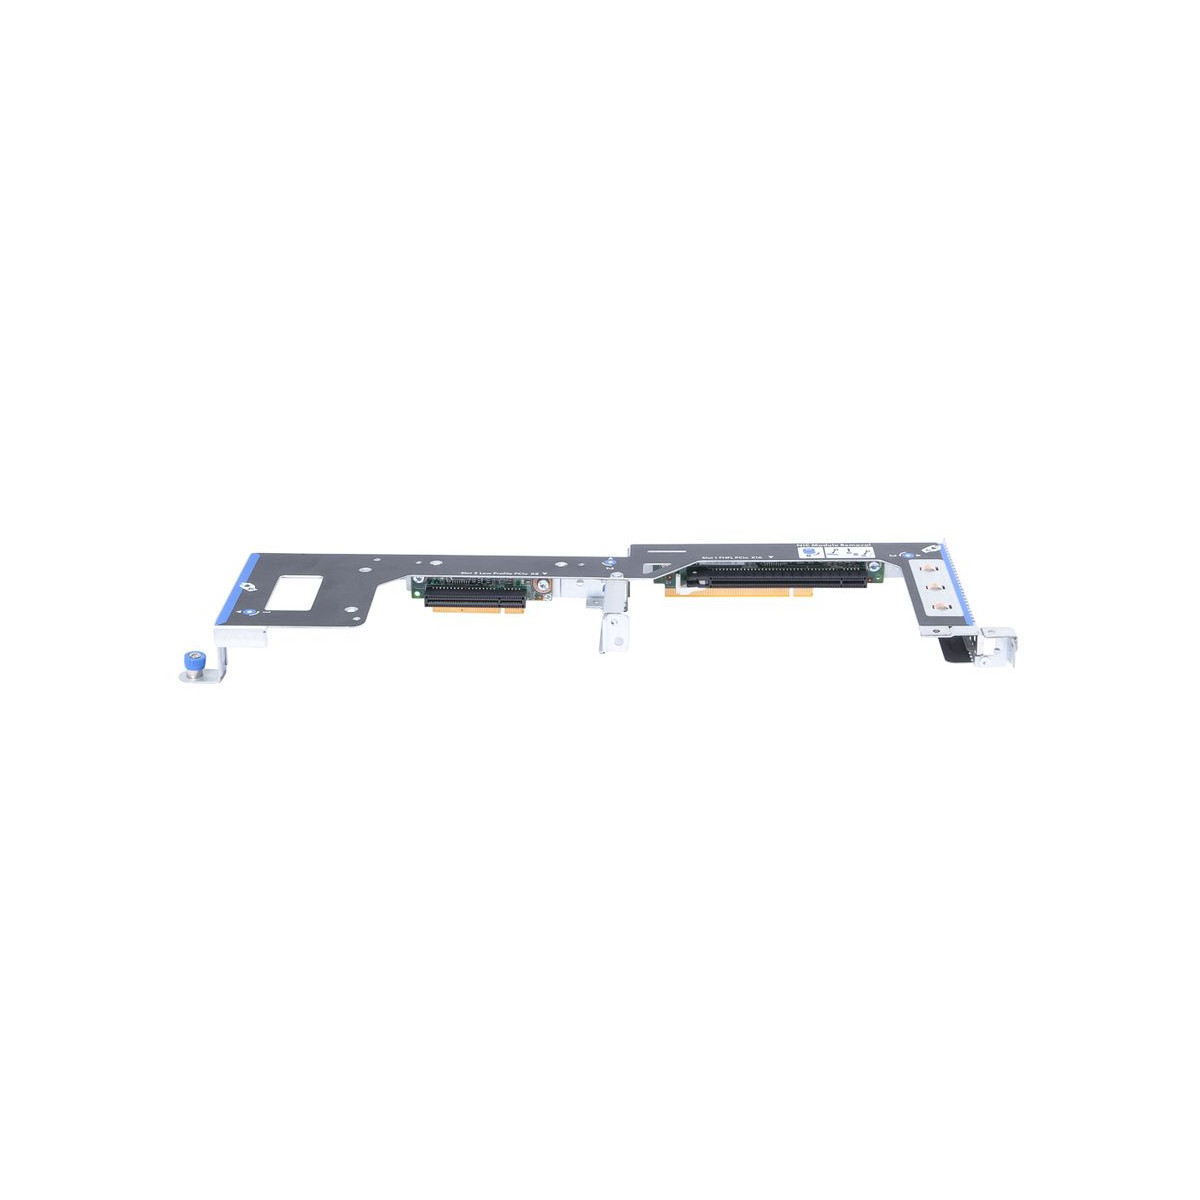 RISER BOARD HP DL160 G8 PCIex8 PCIex16 683062-001